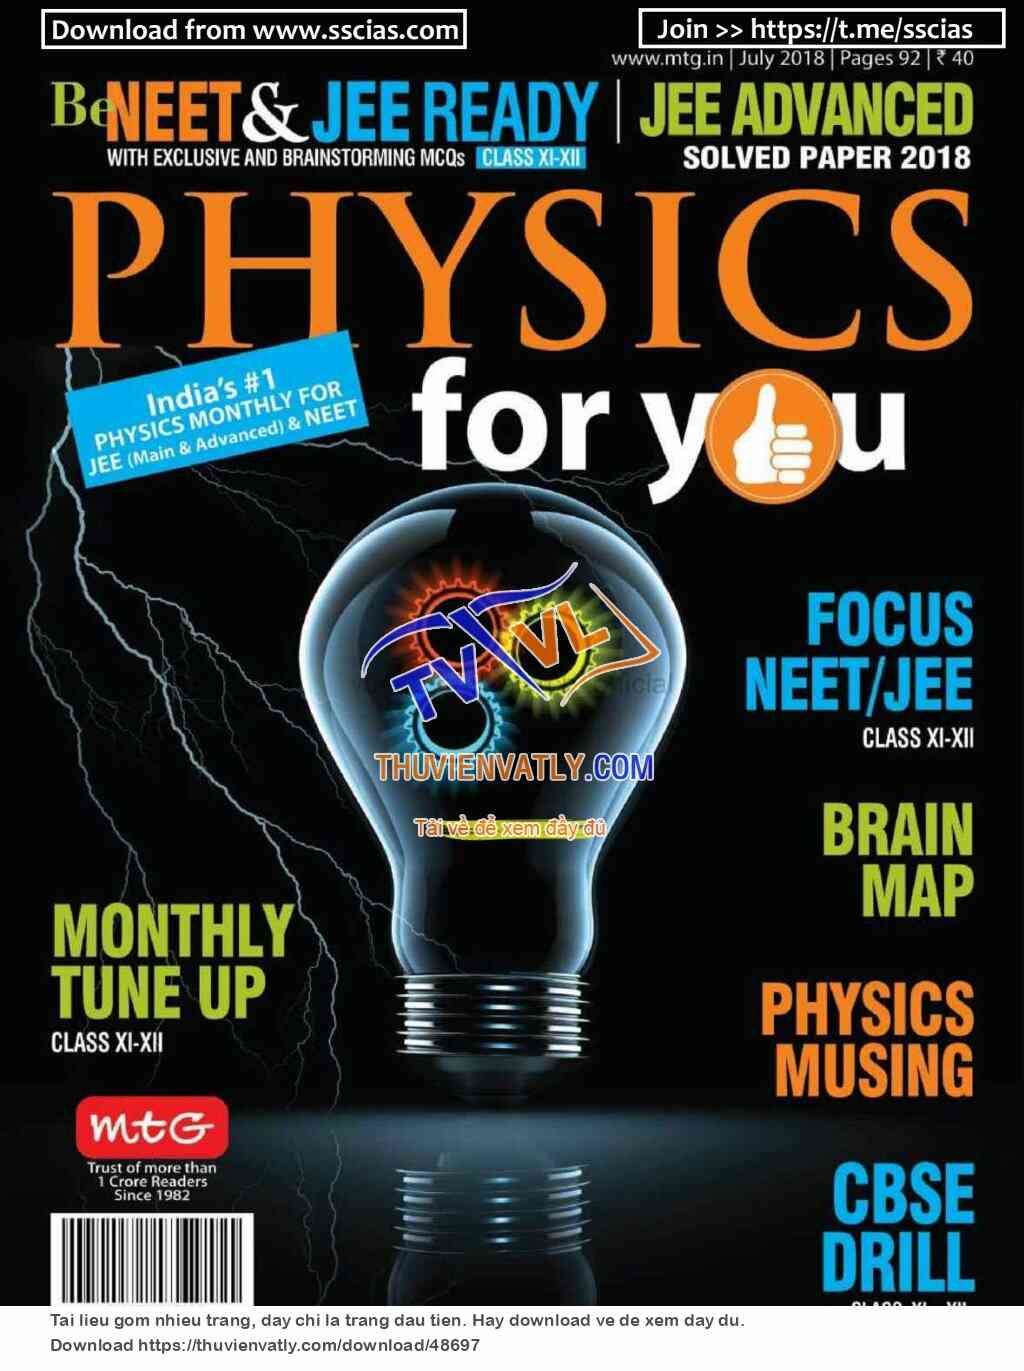 Tạp chí Physics For You tháng 7/2018